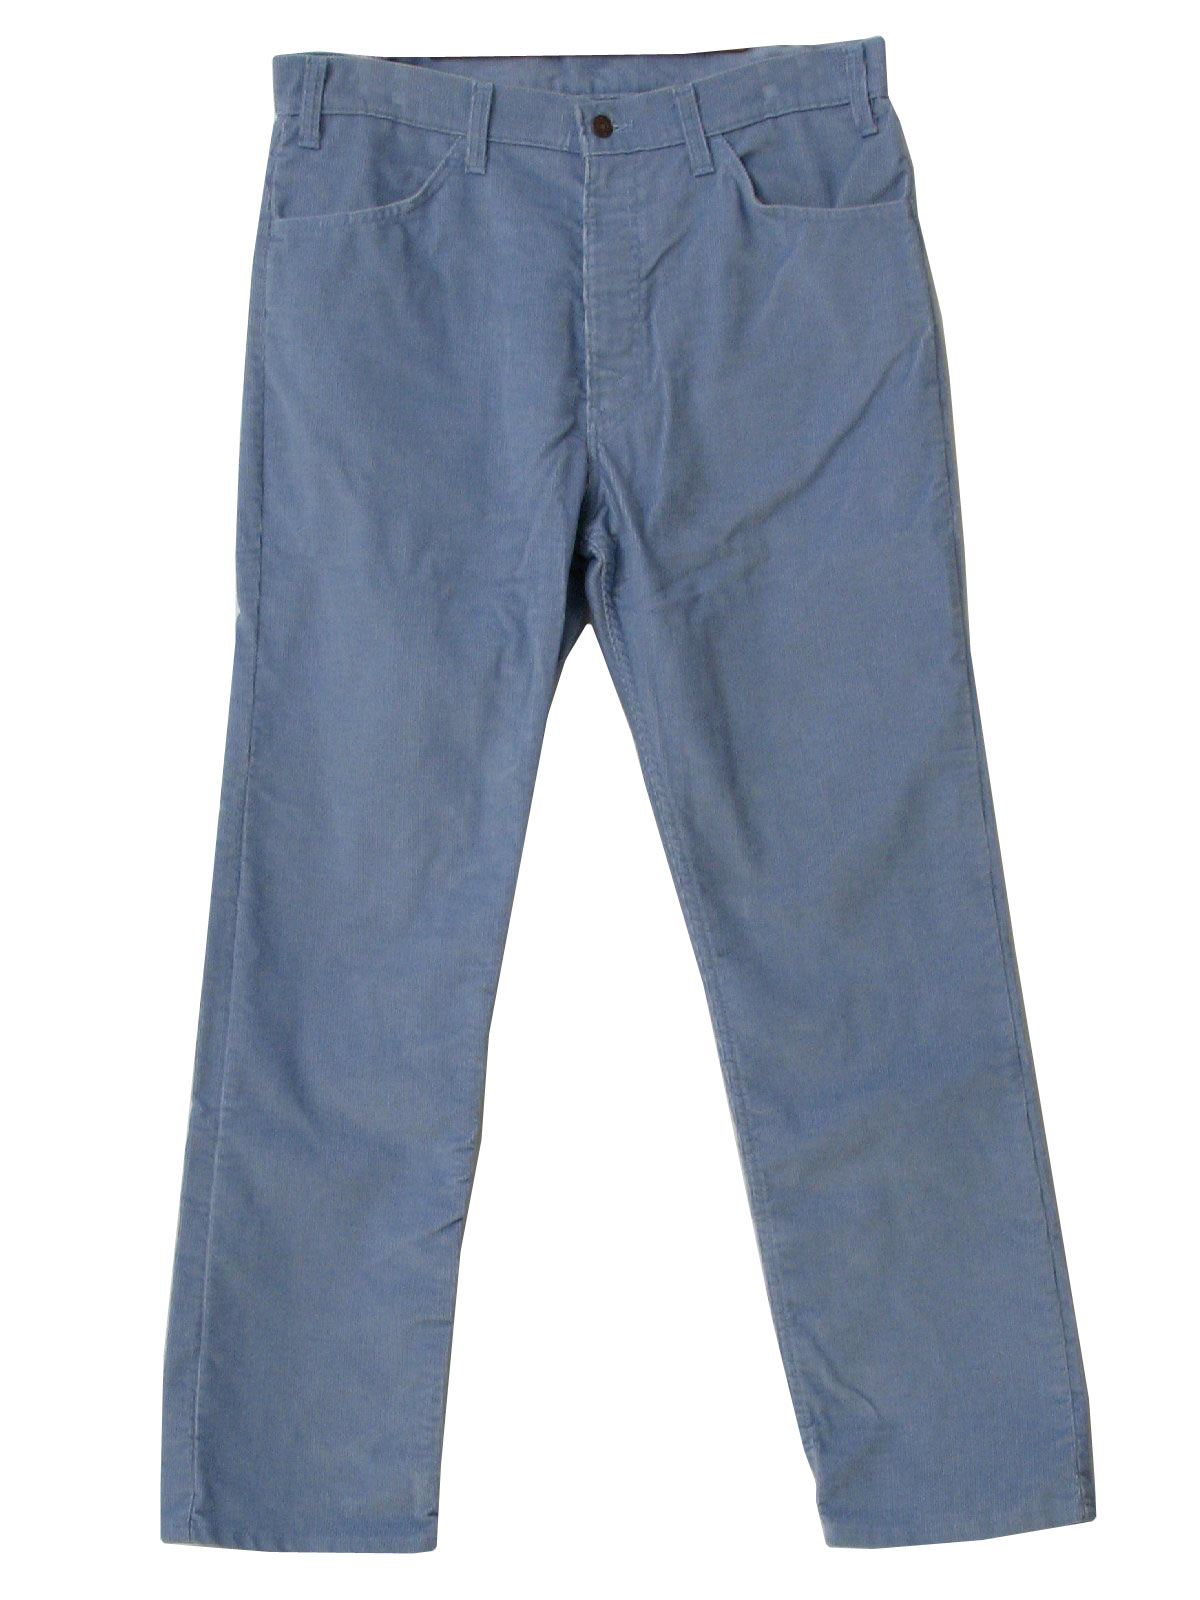 levi's blue corduroy pants